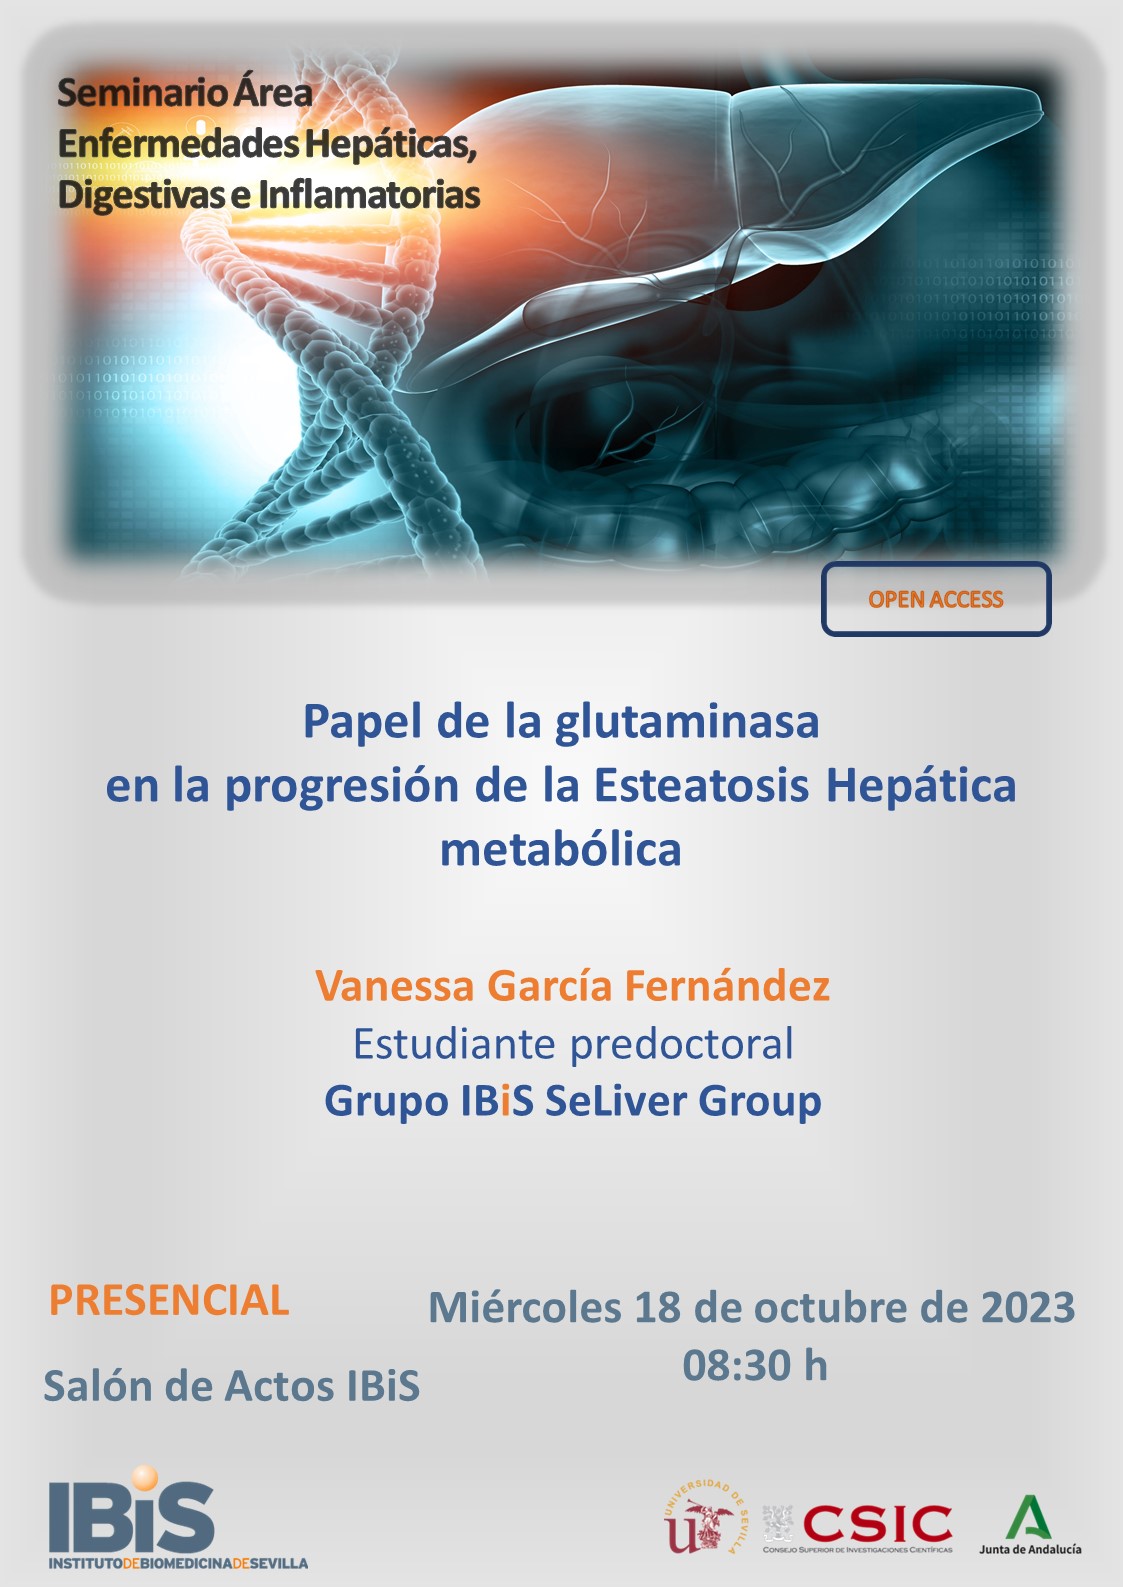 Poster: Papel de la glutaminasa en la progresión de la Esteatosis Hepática metabólica